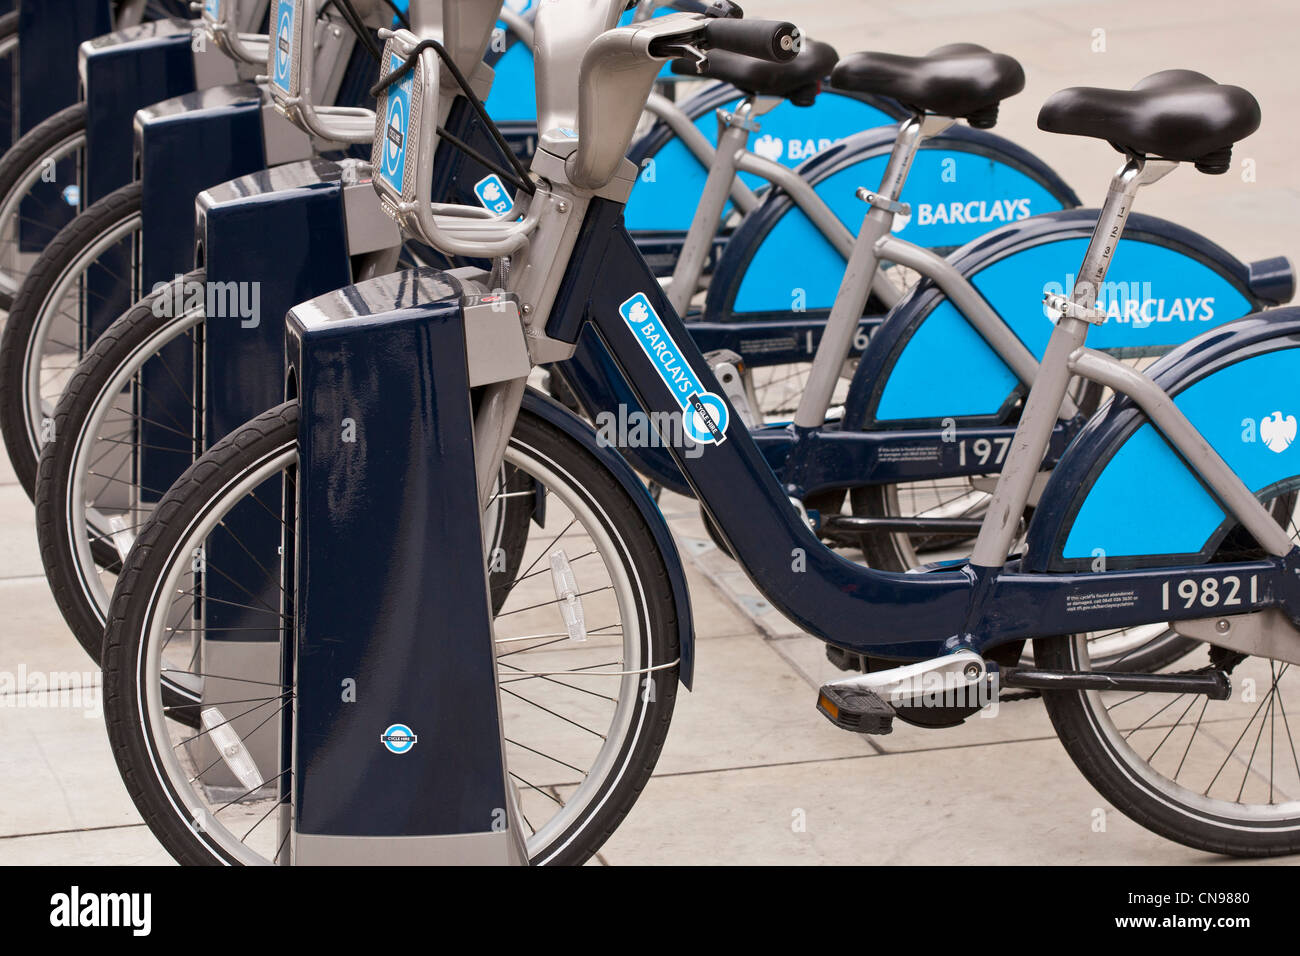 Vereinigtes Königreich, London, City, Barclays Cycle Hire, ein Fahrrad-Verleih-System im Jahr 2010 gegründet Stockfoto